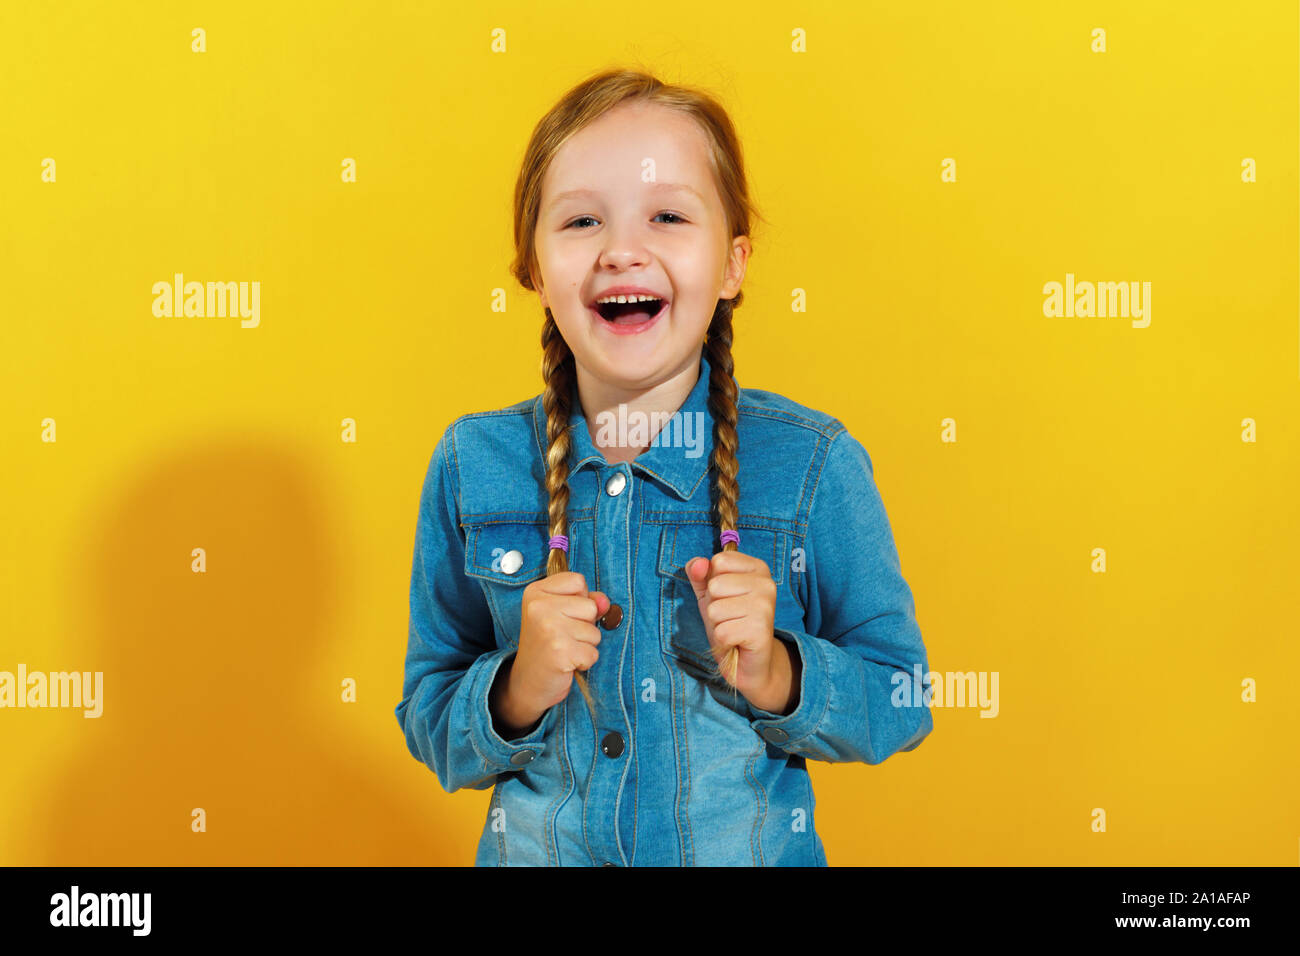 Allegro felice bambina in una camicia di denim su sfondo giallo. Il bambino ride e trattiene trecce di capelli. Foto Stock